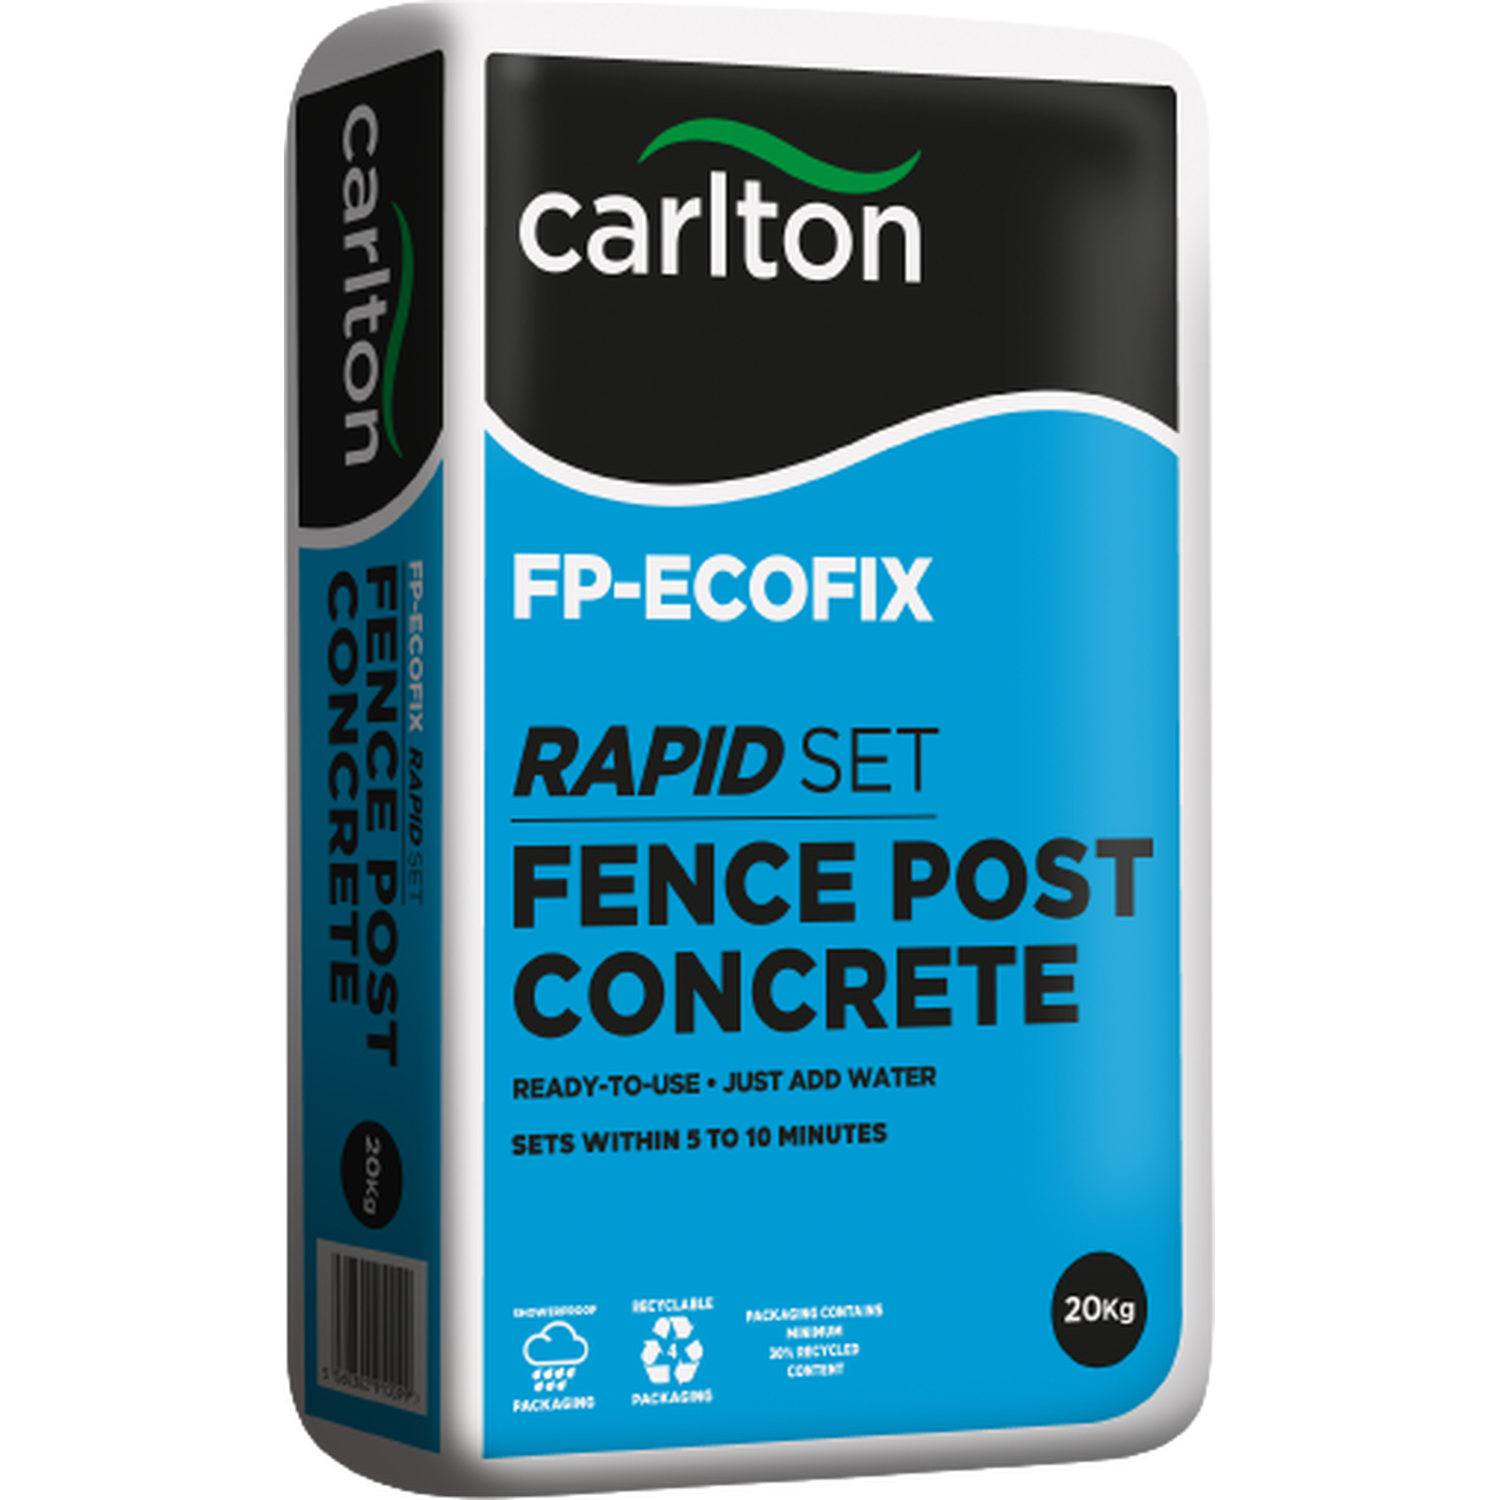 Carlton Rapid Set Fence Post Concrete 20kg Image